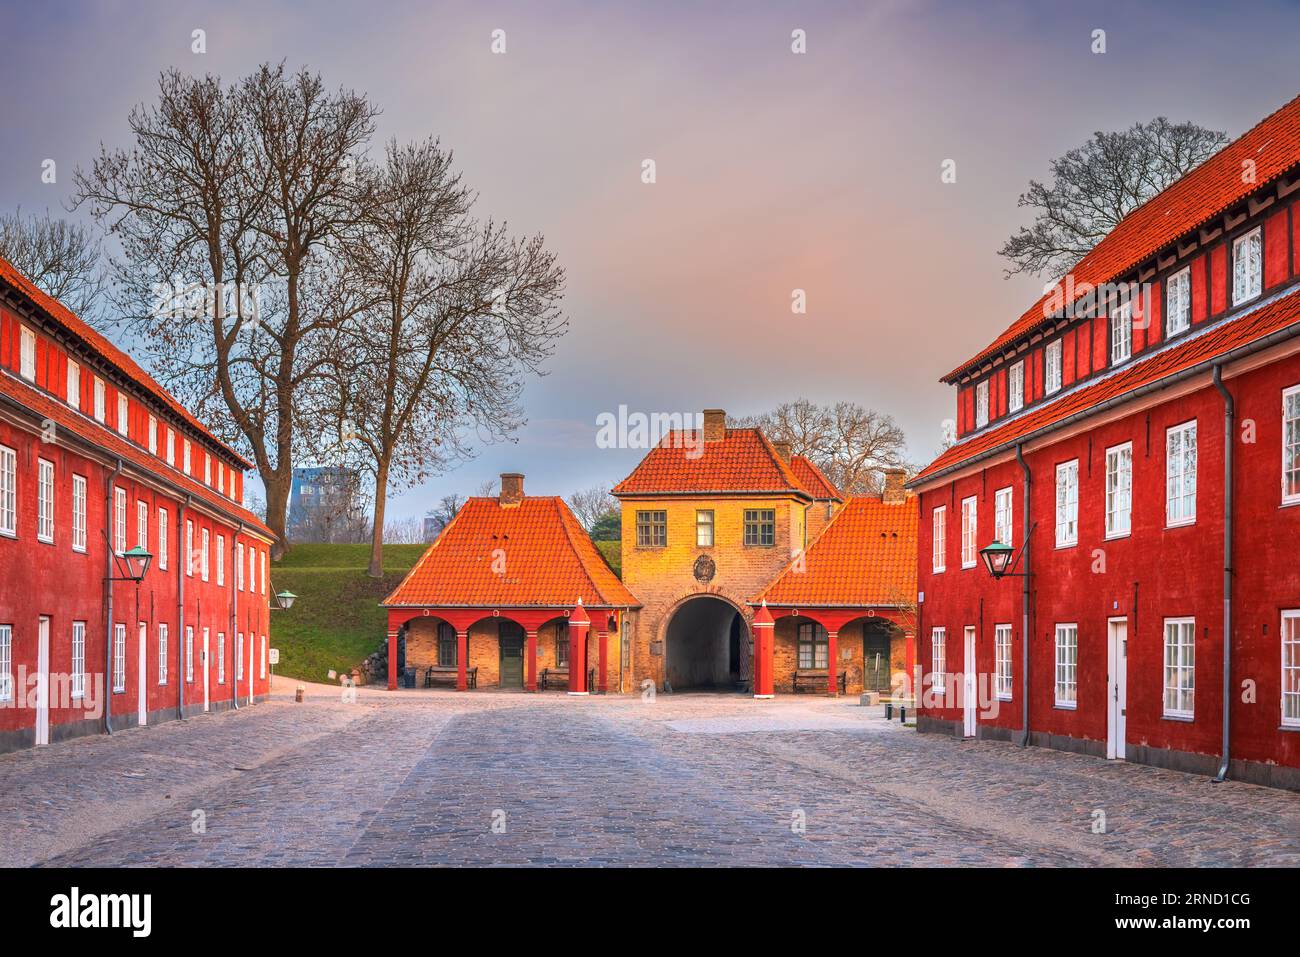 Kopenhagen, Dänemark. Kastellet Zitadelle aus dem 17. Jahrhundert, eine der am besten erhaltenen Festungen in Nordeuropa, pentagon-Form mit Bastionen an seinem Corne Stockfoto